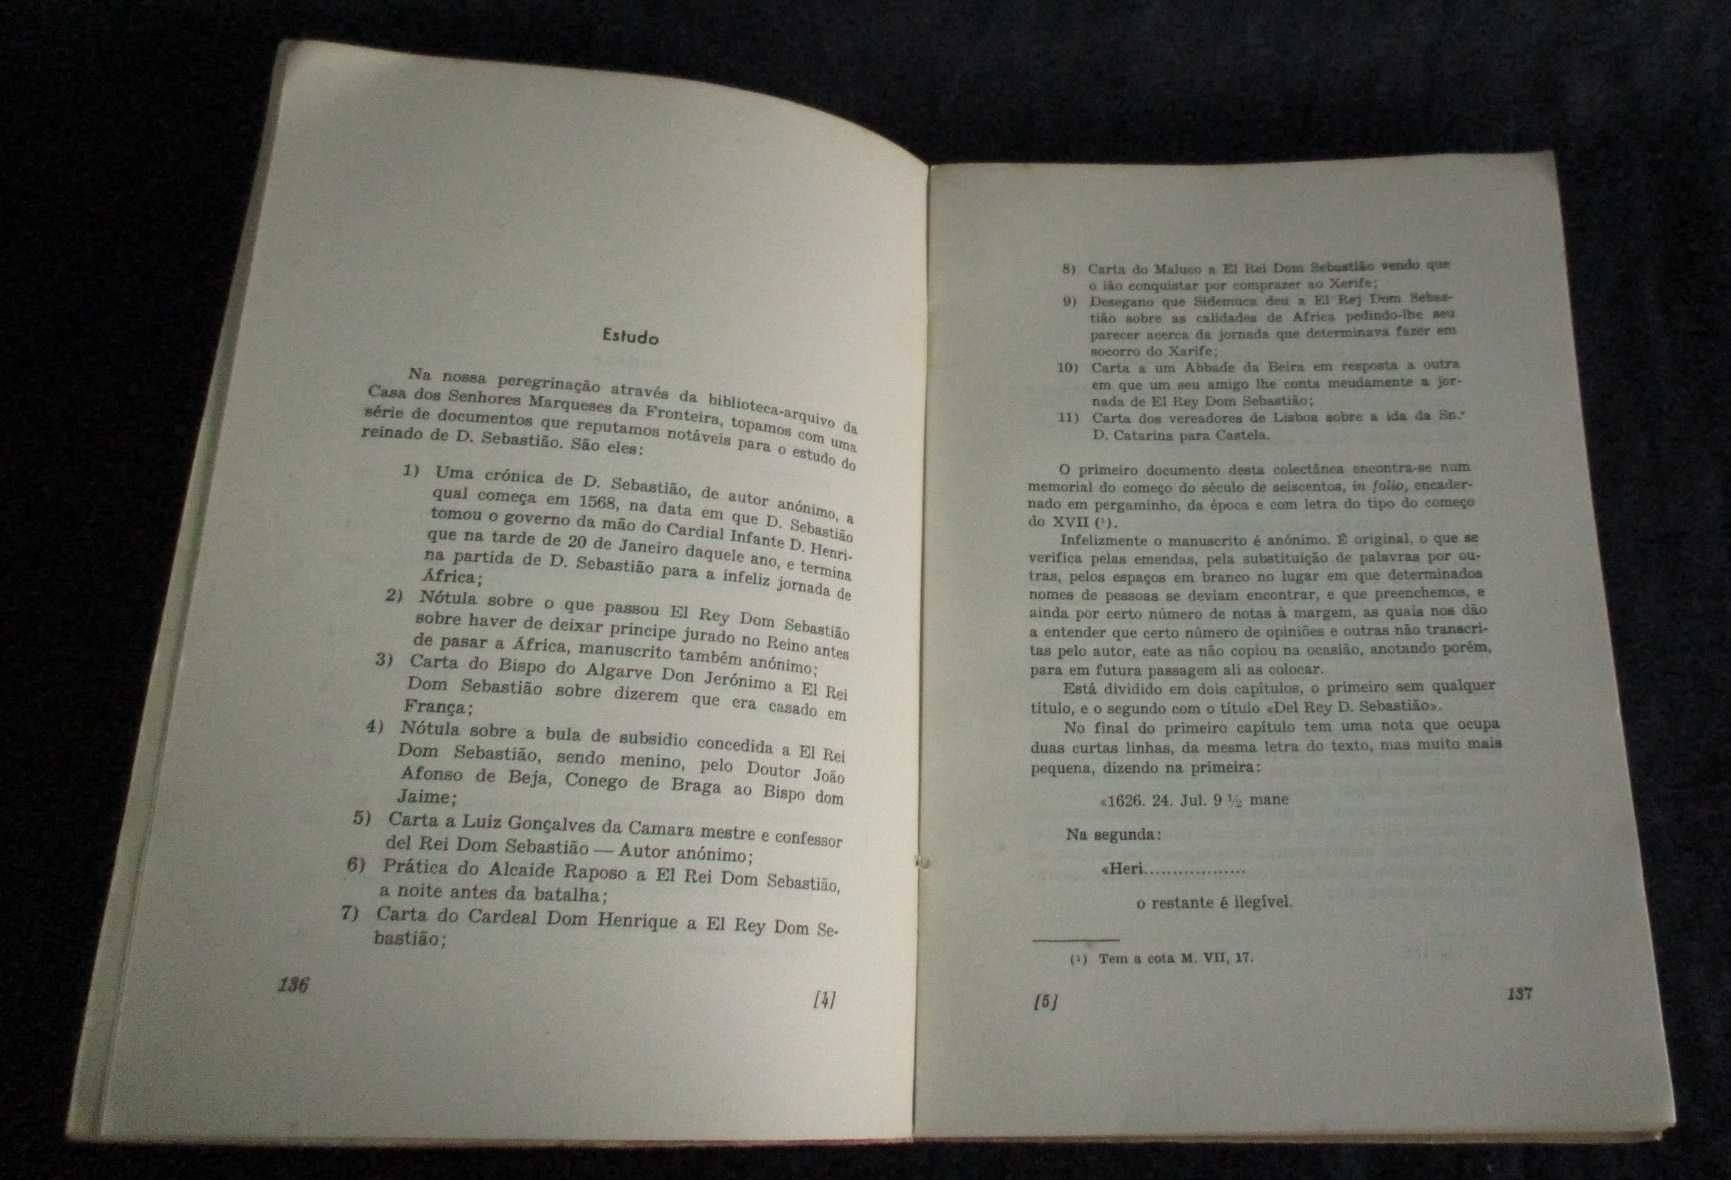 Livro Colectânea de documentos acerca de D. Sebastião Luciano Ribeiro